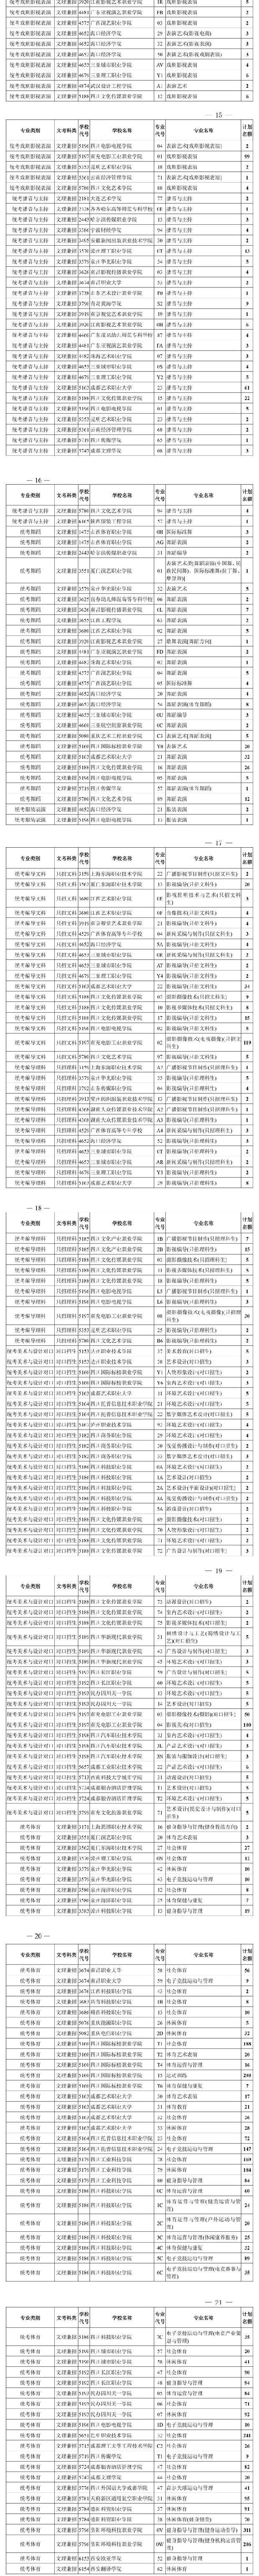 2020四川艺体类专科征集志愿时间及专业计划数一览